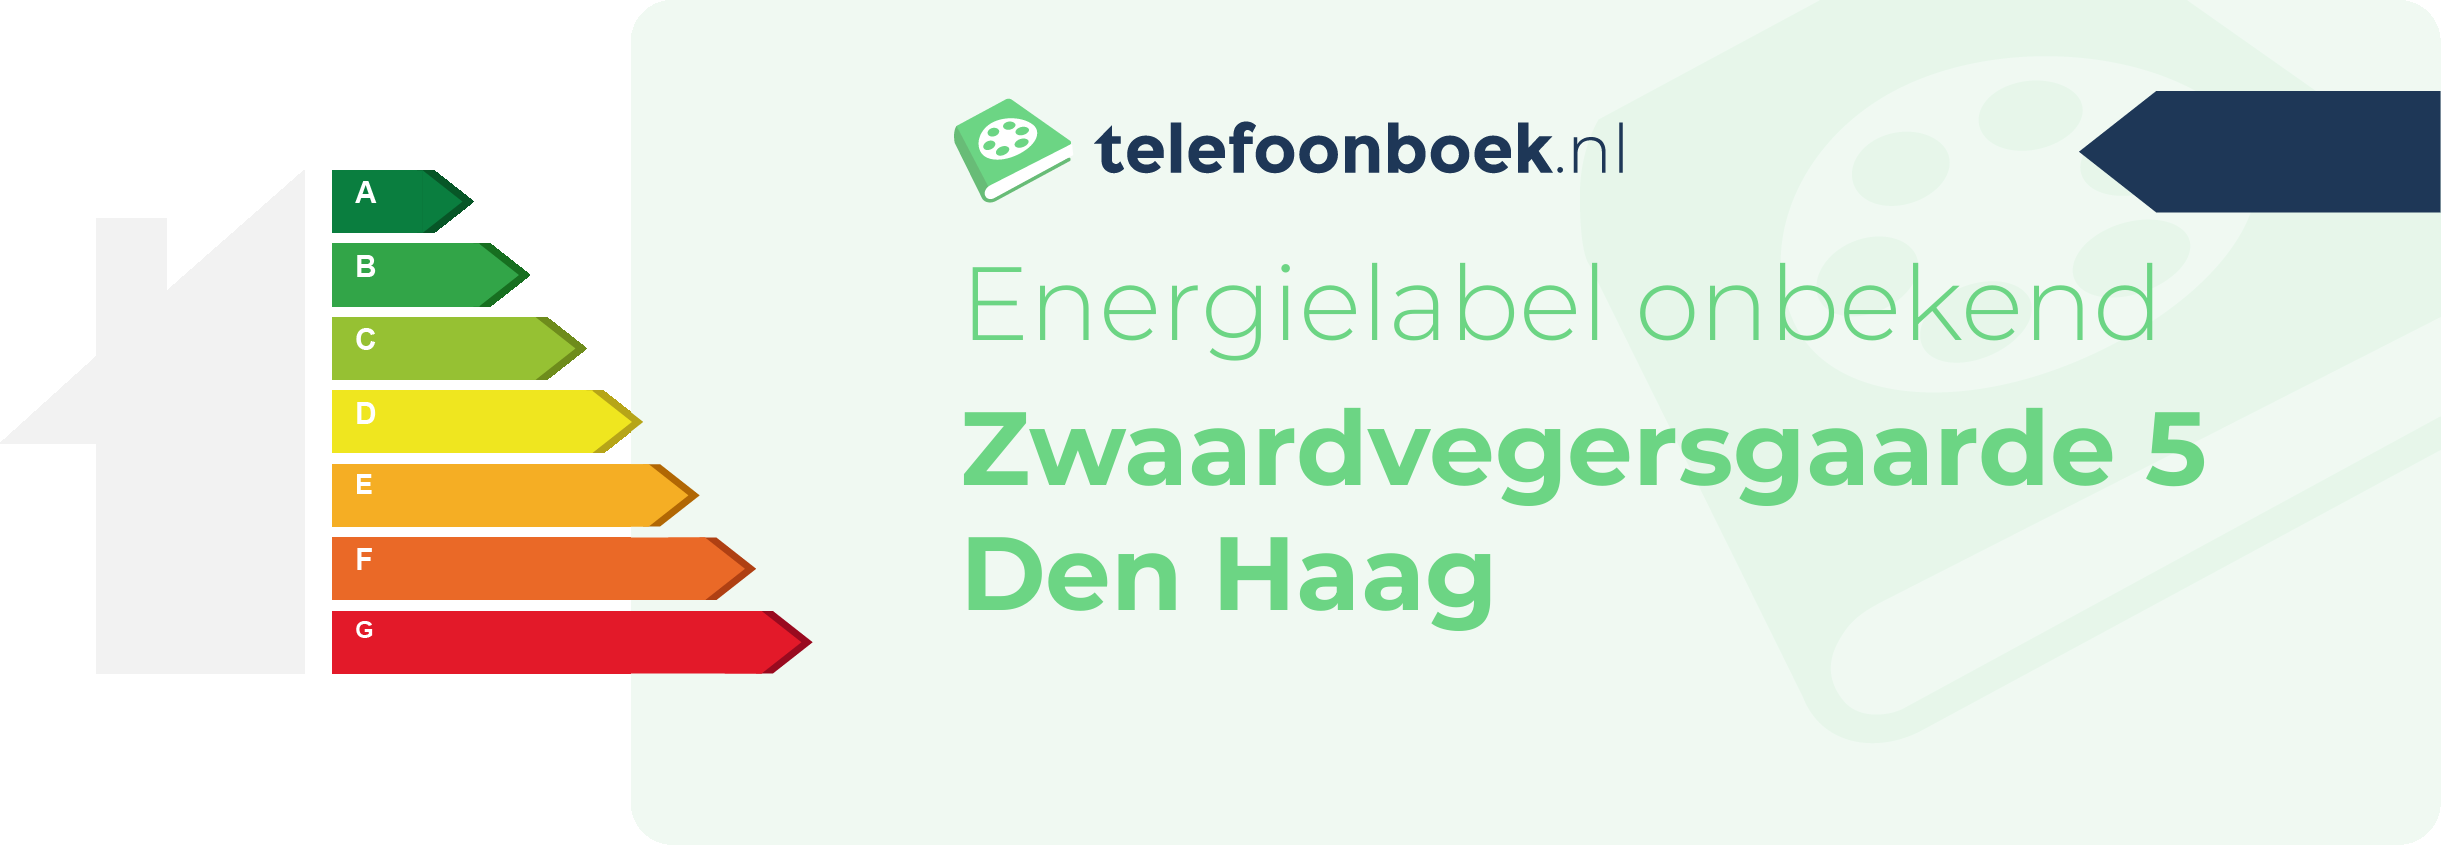 Energielabel Zwaardvegersgaarde 5 Den Haag